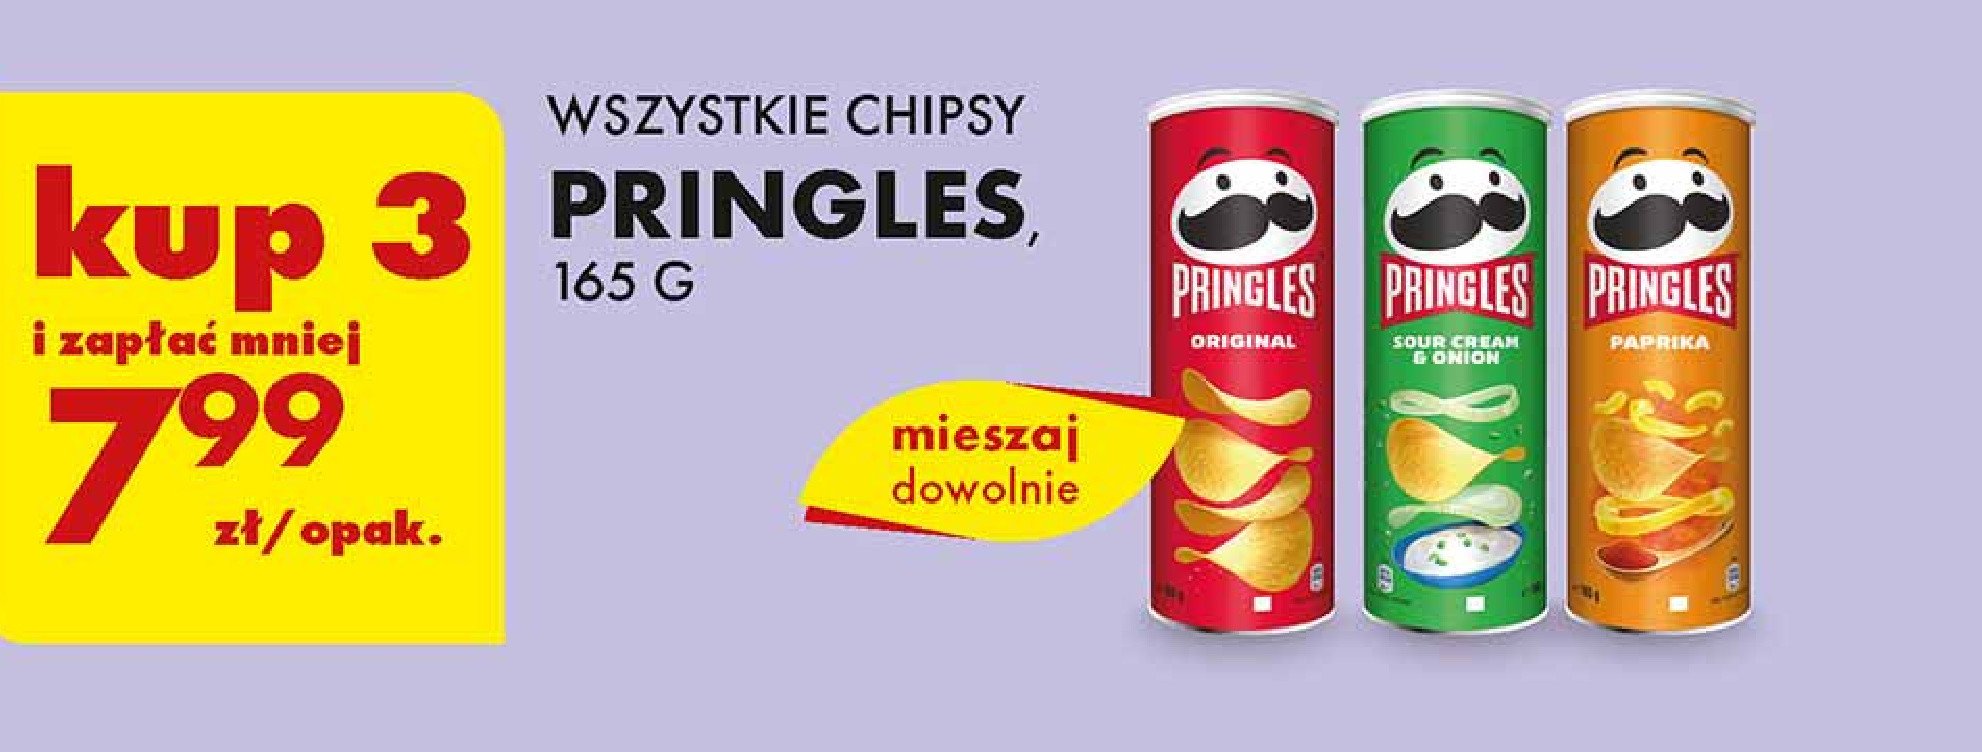 Chipsy Pringles promocja